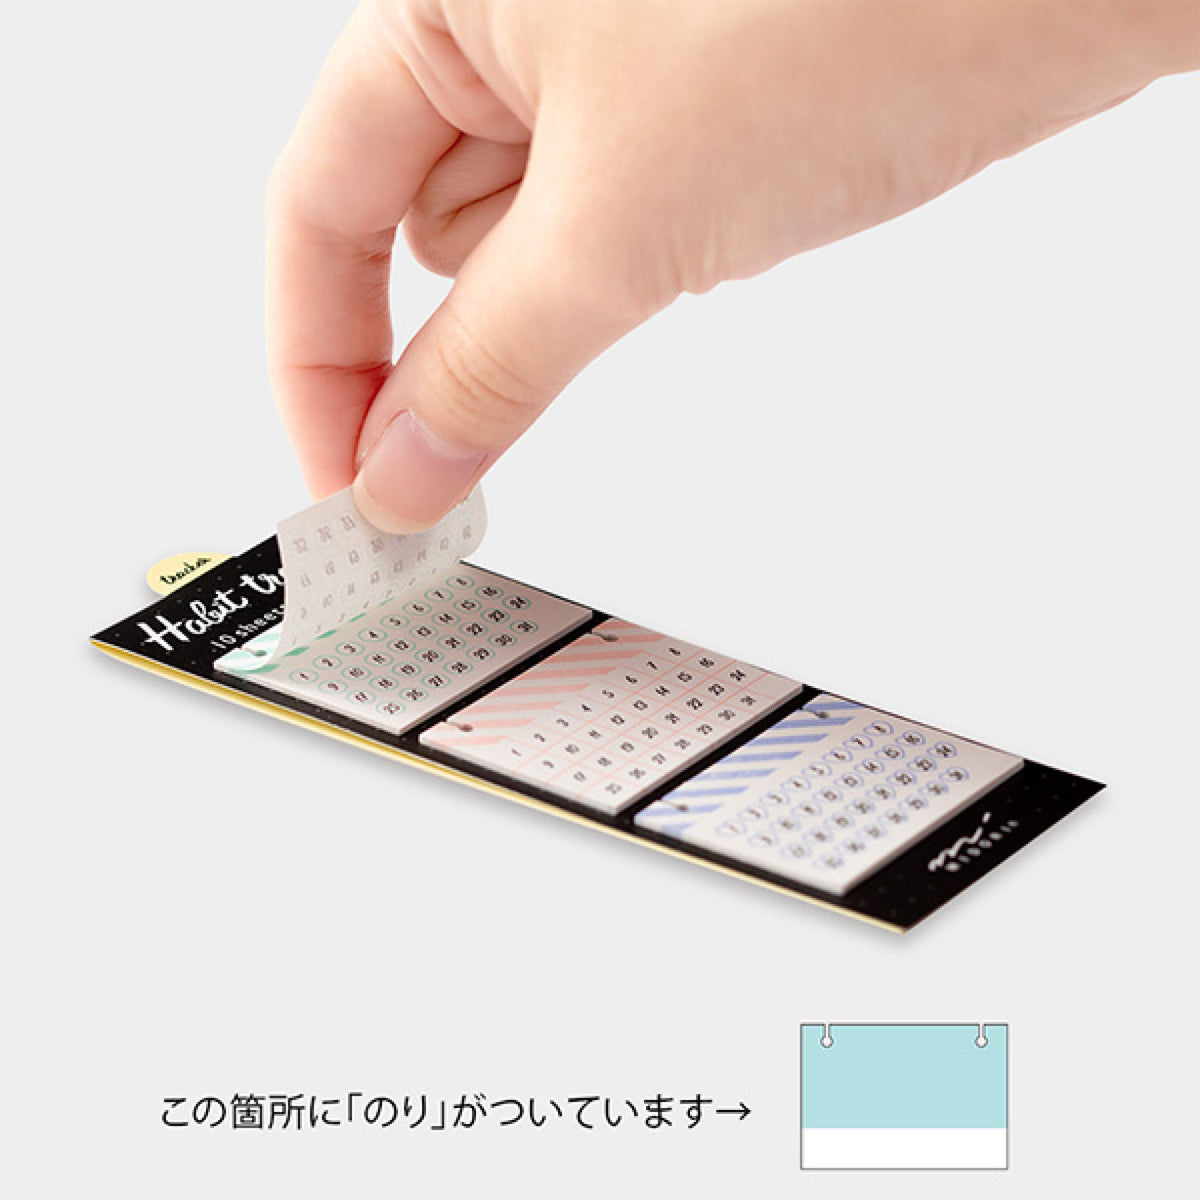 Midori - Sticker Seal - Habit Tracker - Square